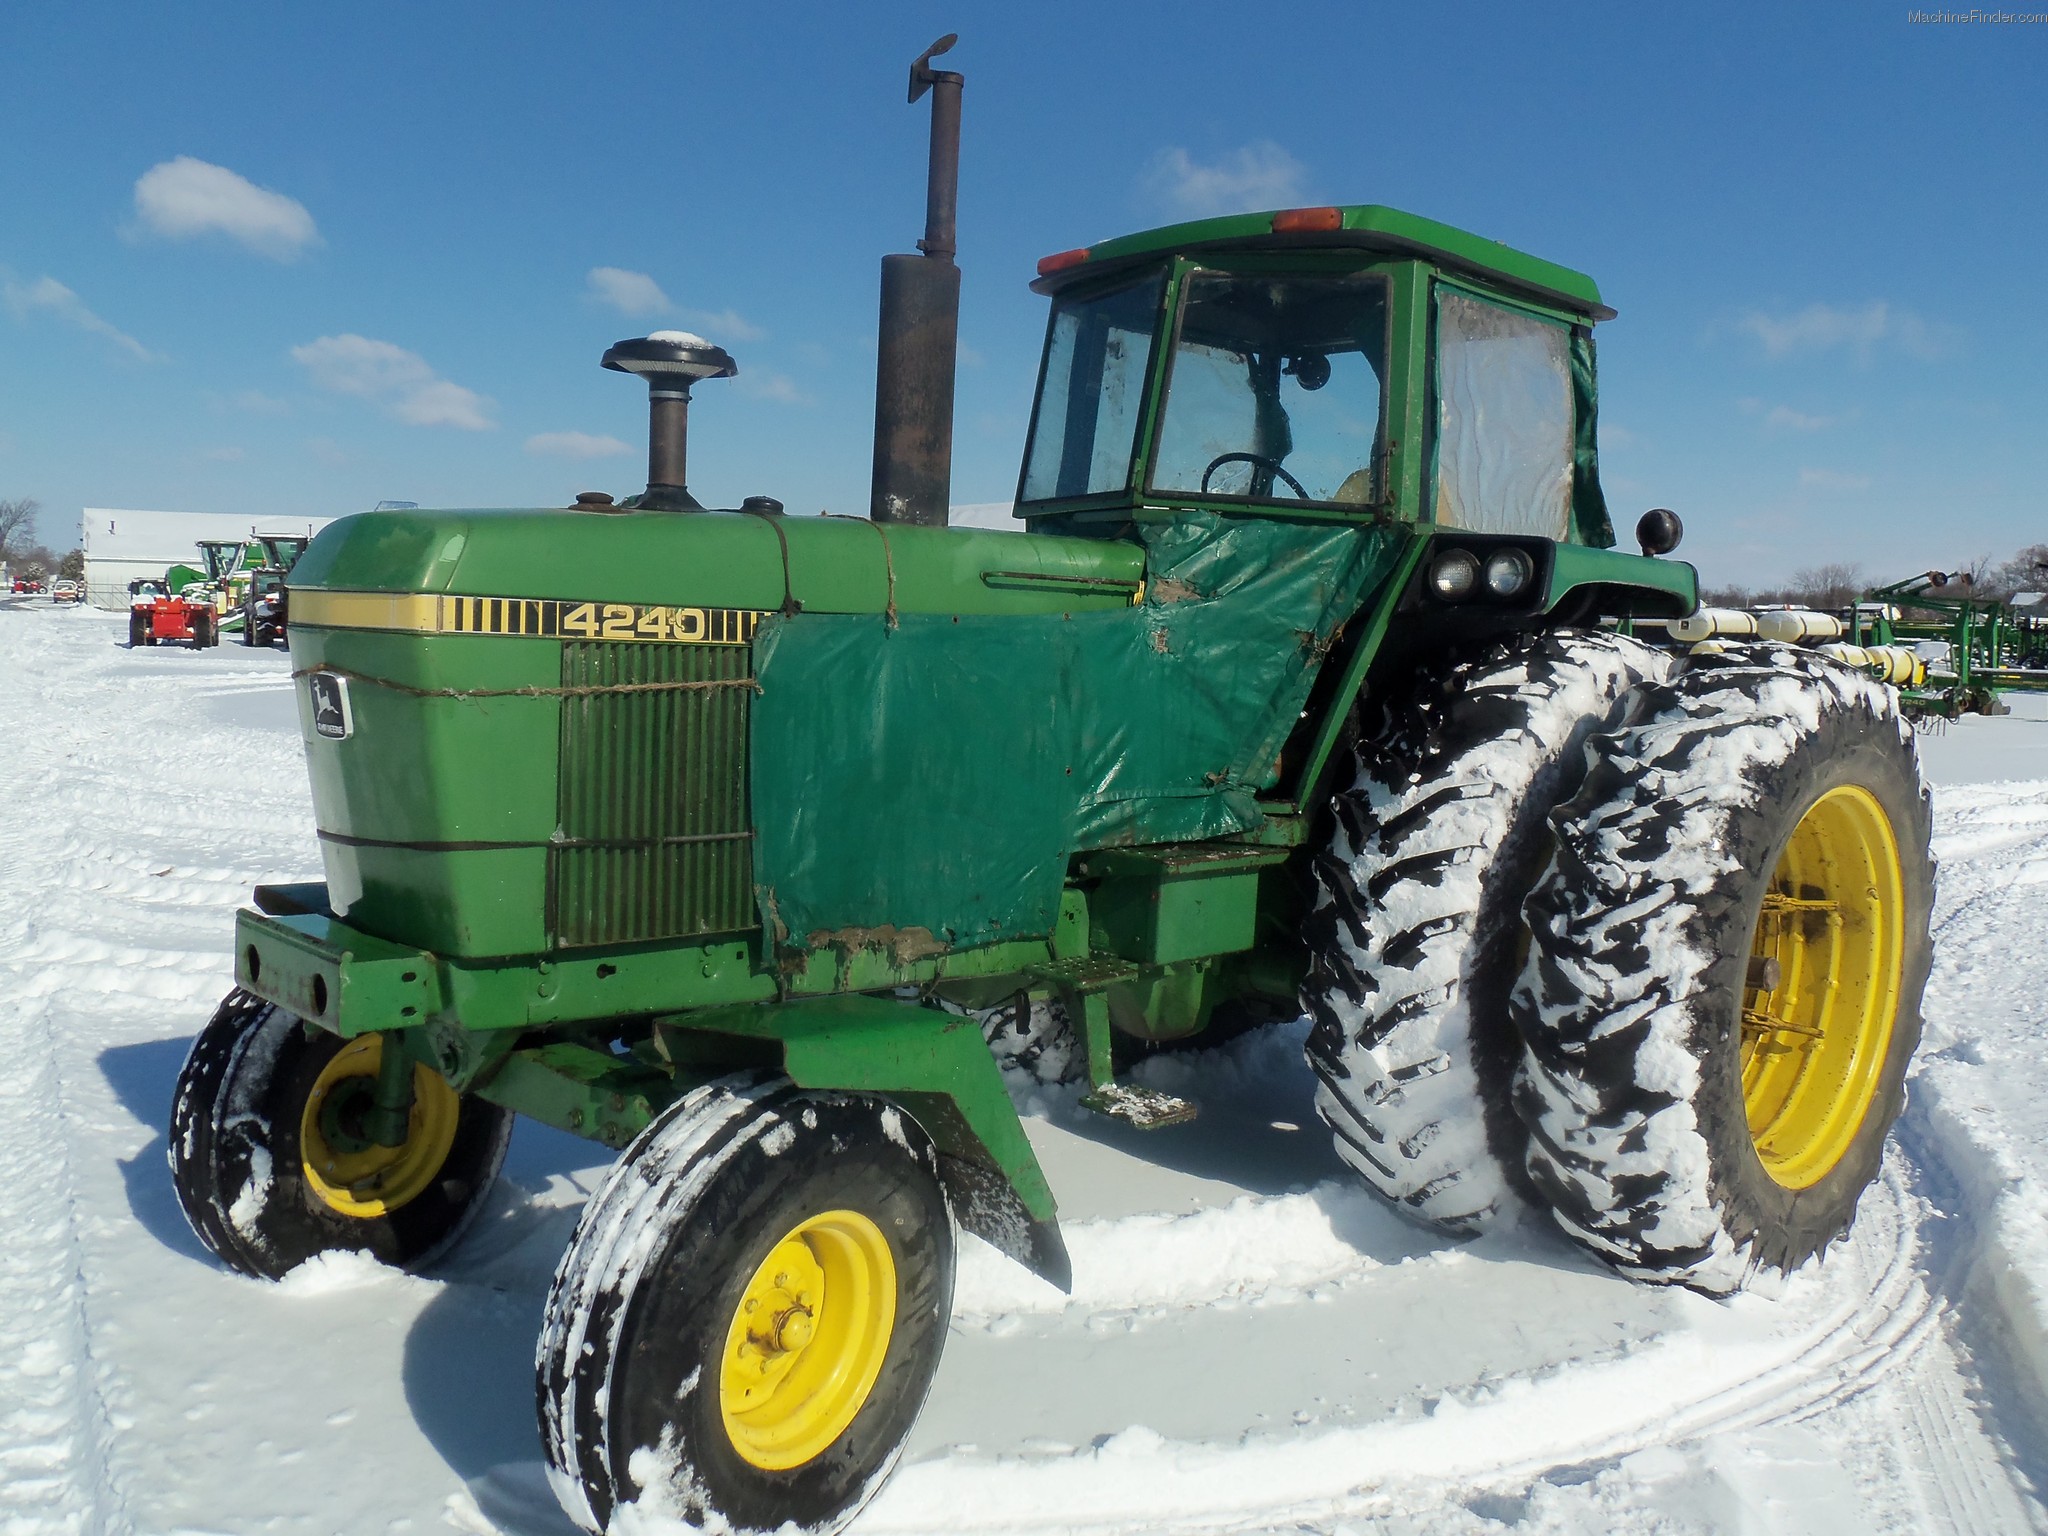 1980 John Deere 4240 Tractors - Row Crop (+100hp) - John Deere ...